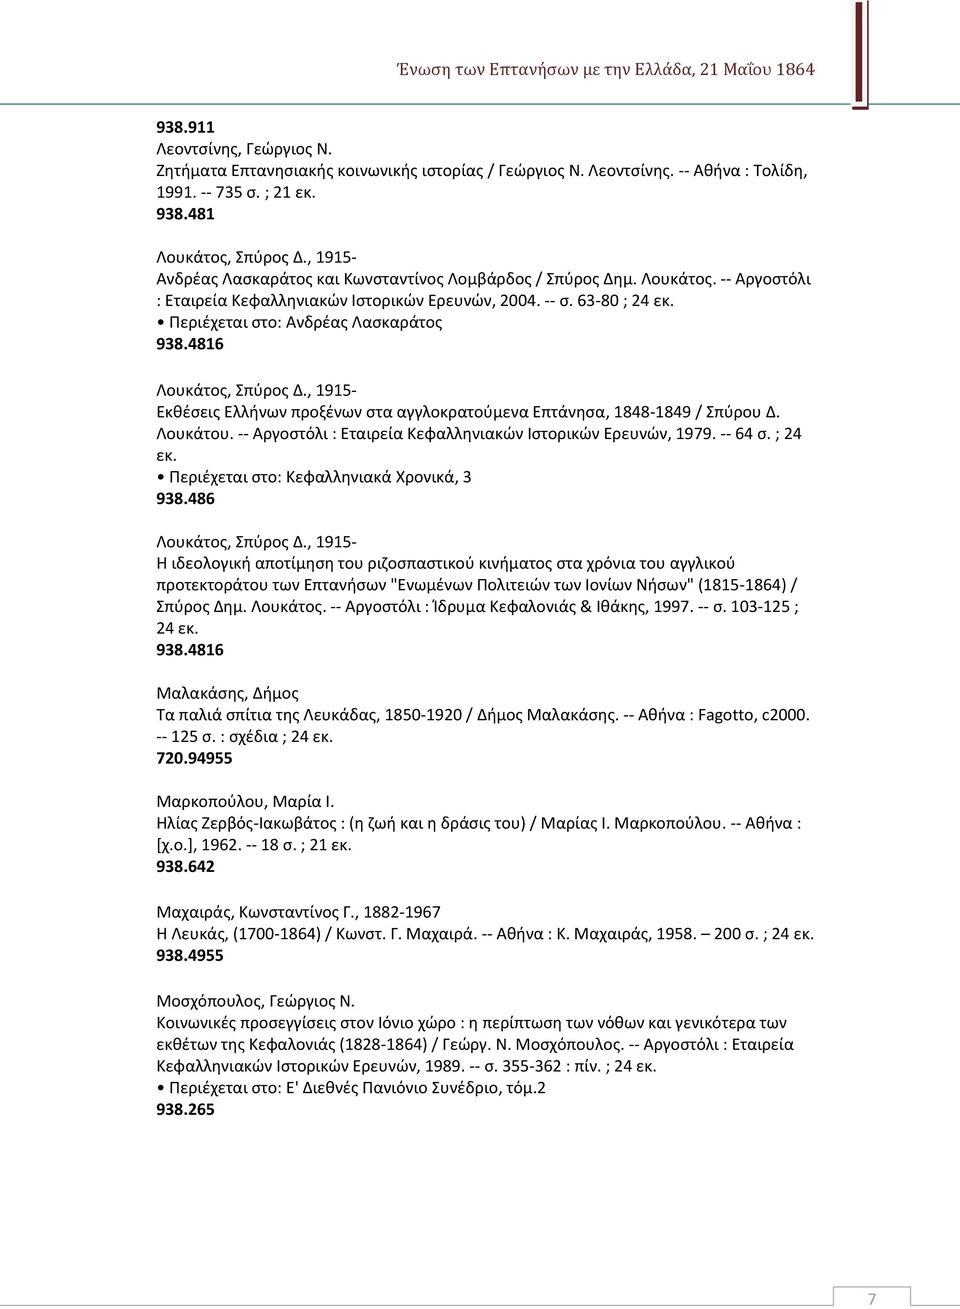 Περιέχεται στο: Ανδρέας Λασκαράτος 938.4816 Λουκάτος, Σπύρος Δ., 1915- Εκθέσεις Ελλήνων προξένων στα αγγλοκρατούμενα Επτάνησα, 1848-1849 / Σπύρου Δ. Λουκάτου.